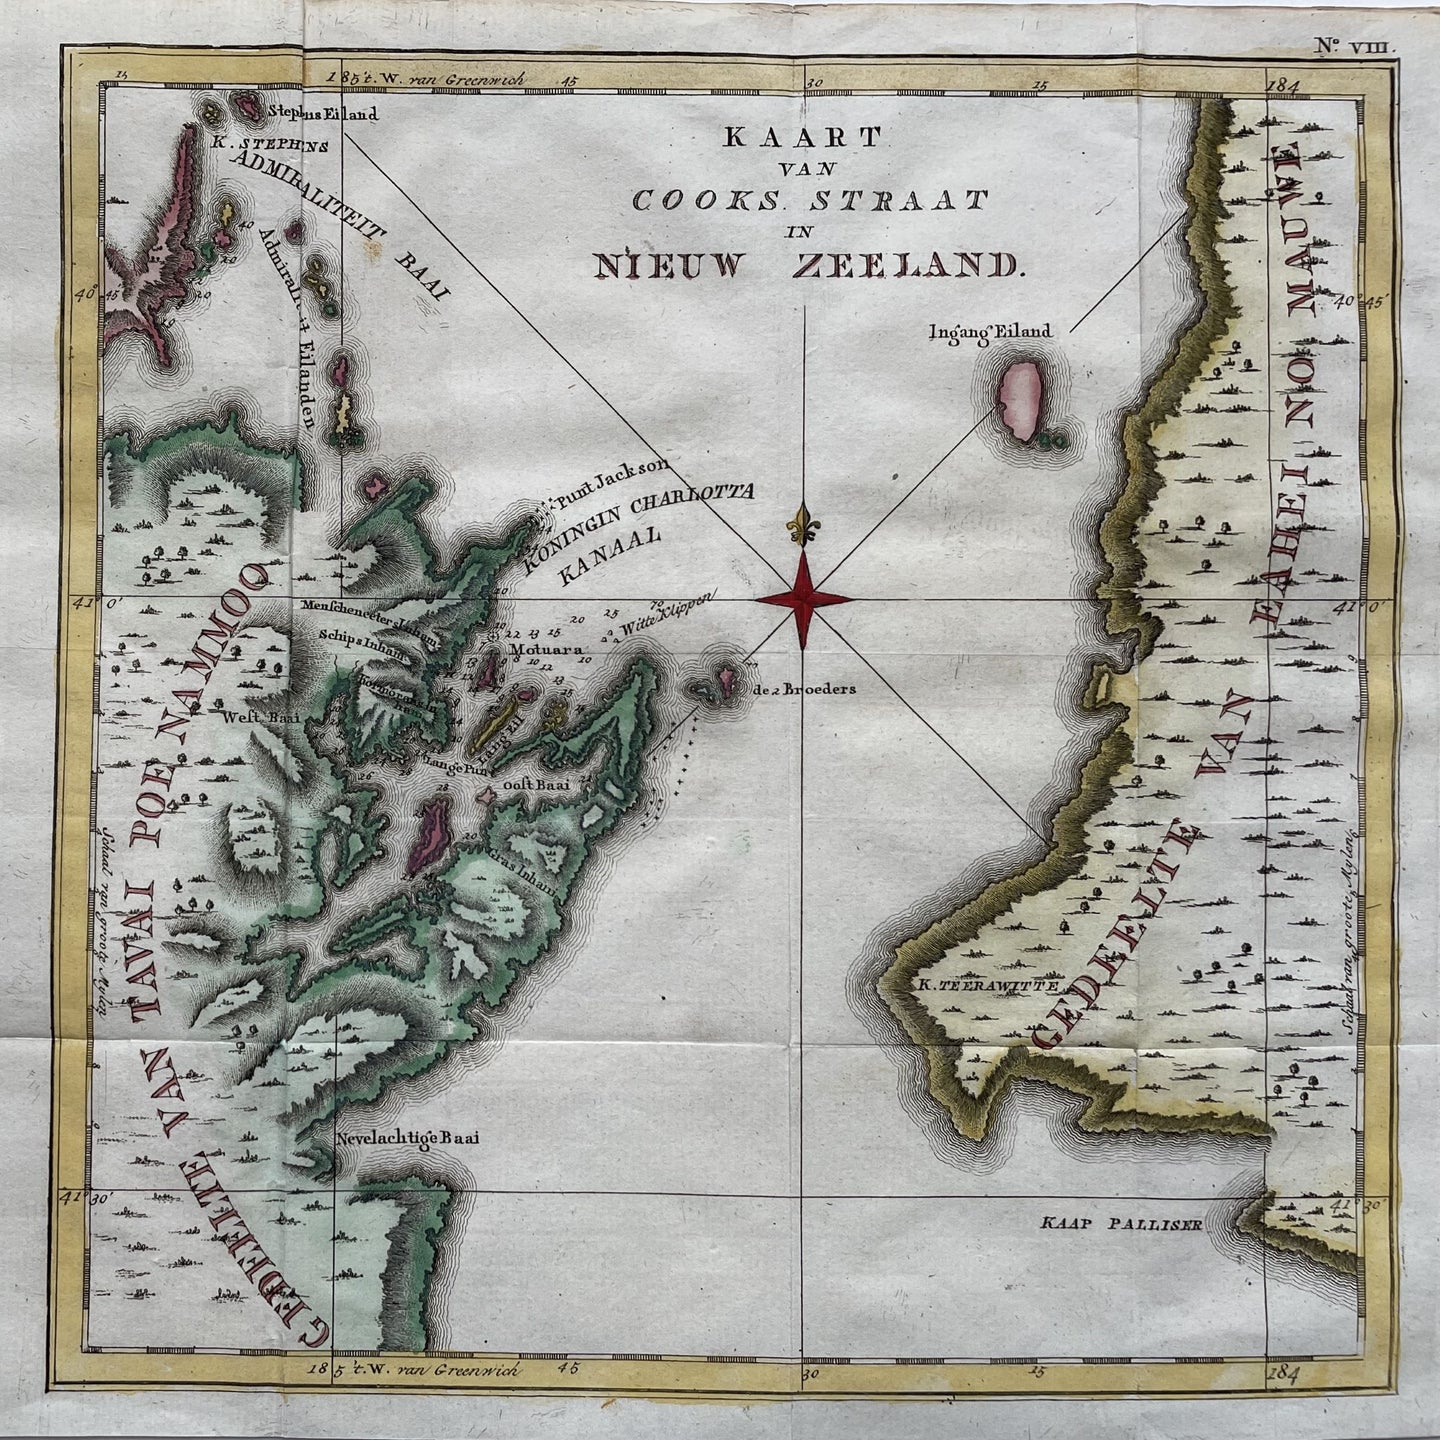 Nieuw-Zeeland Cook Strait New Zealand - J Cook - circa 1797